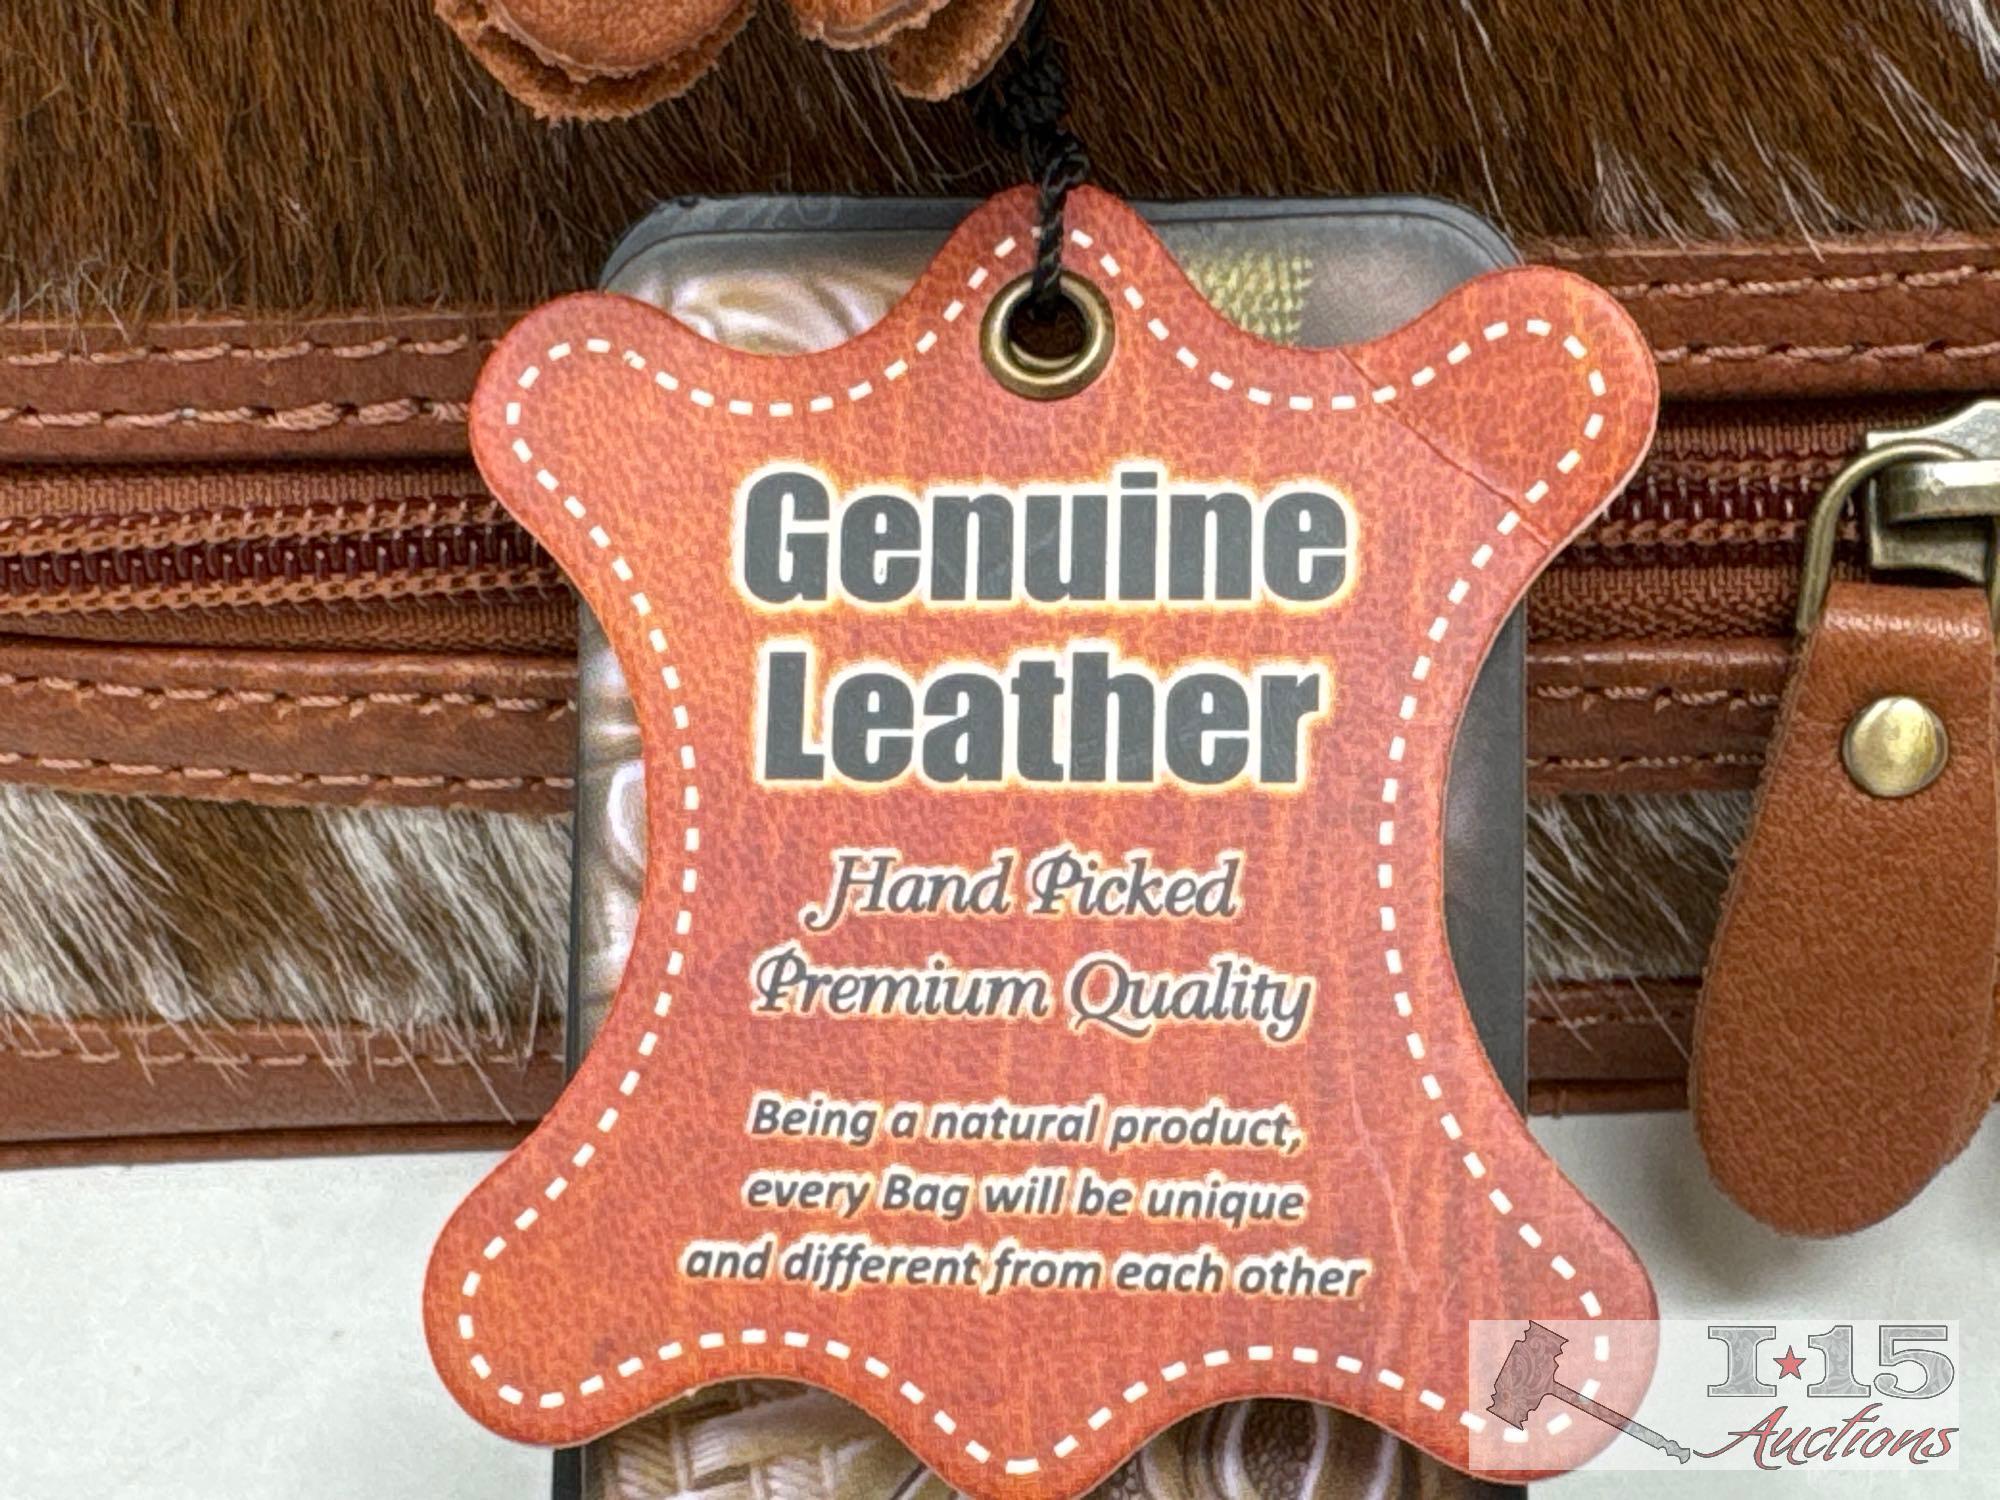 American Darling Genuine Leather & Cowhide Jewelry Bag